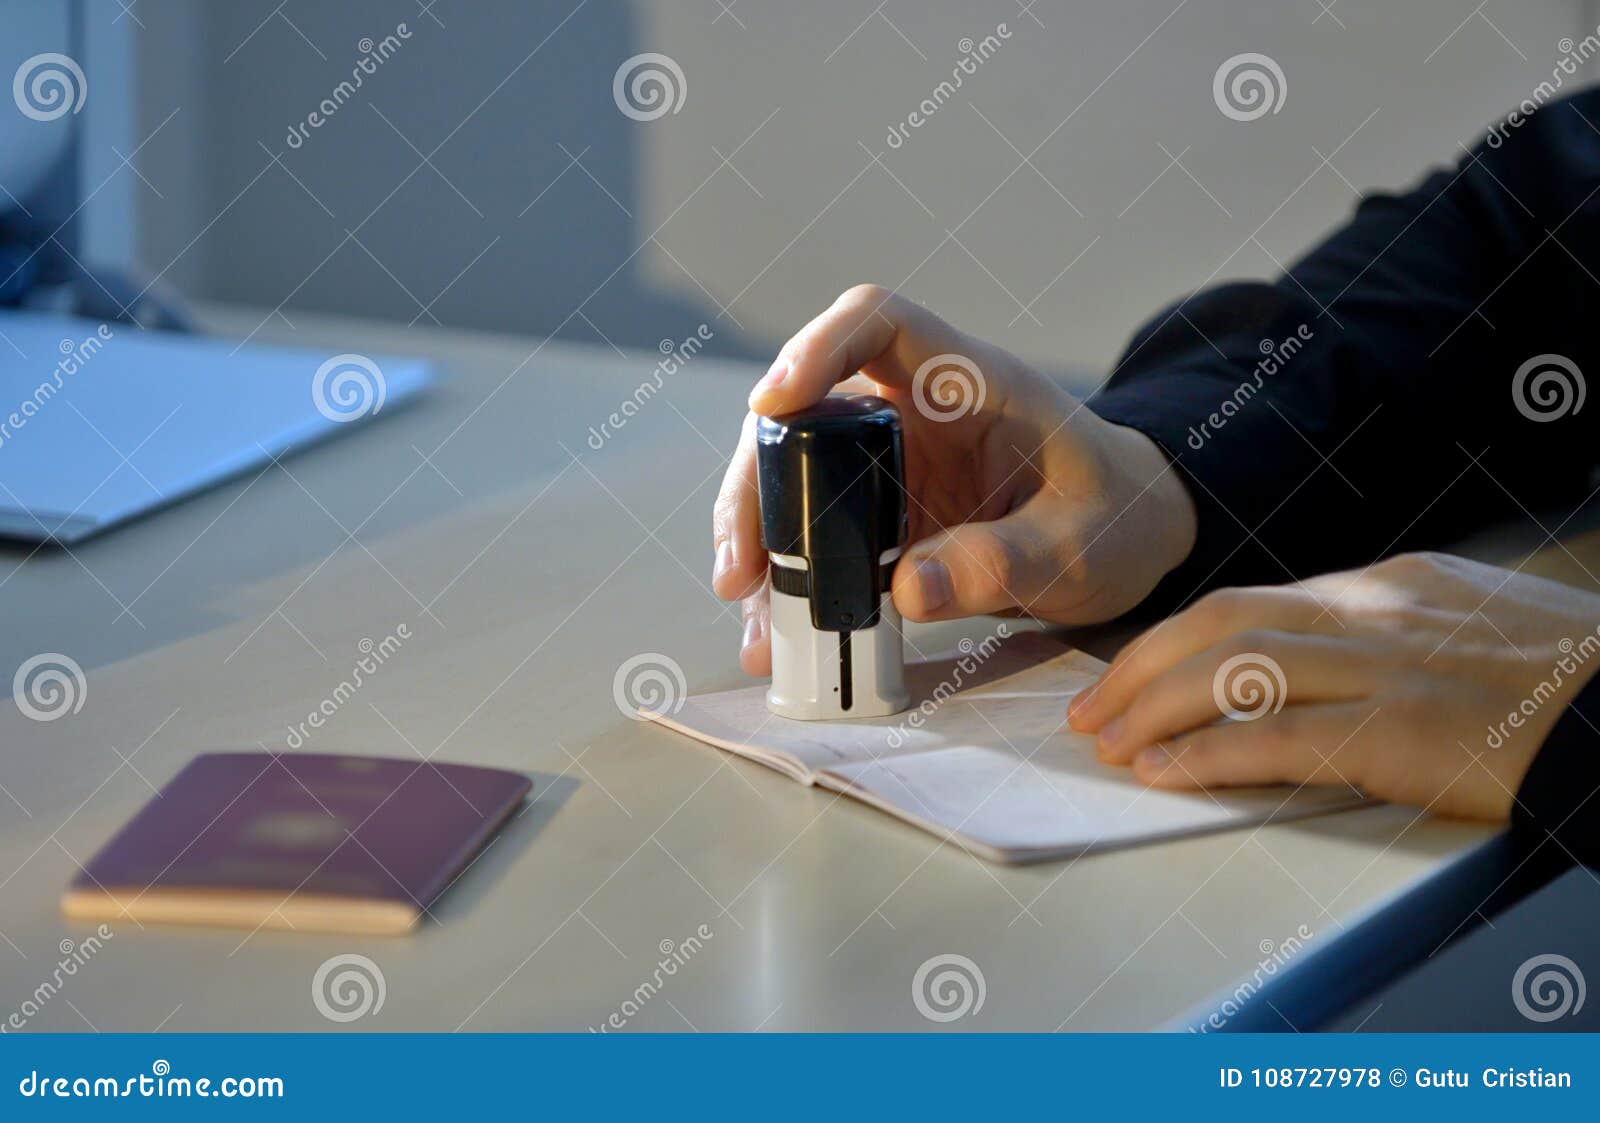 customs officer stamping a passport